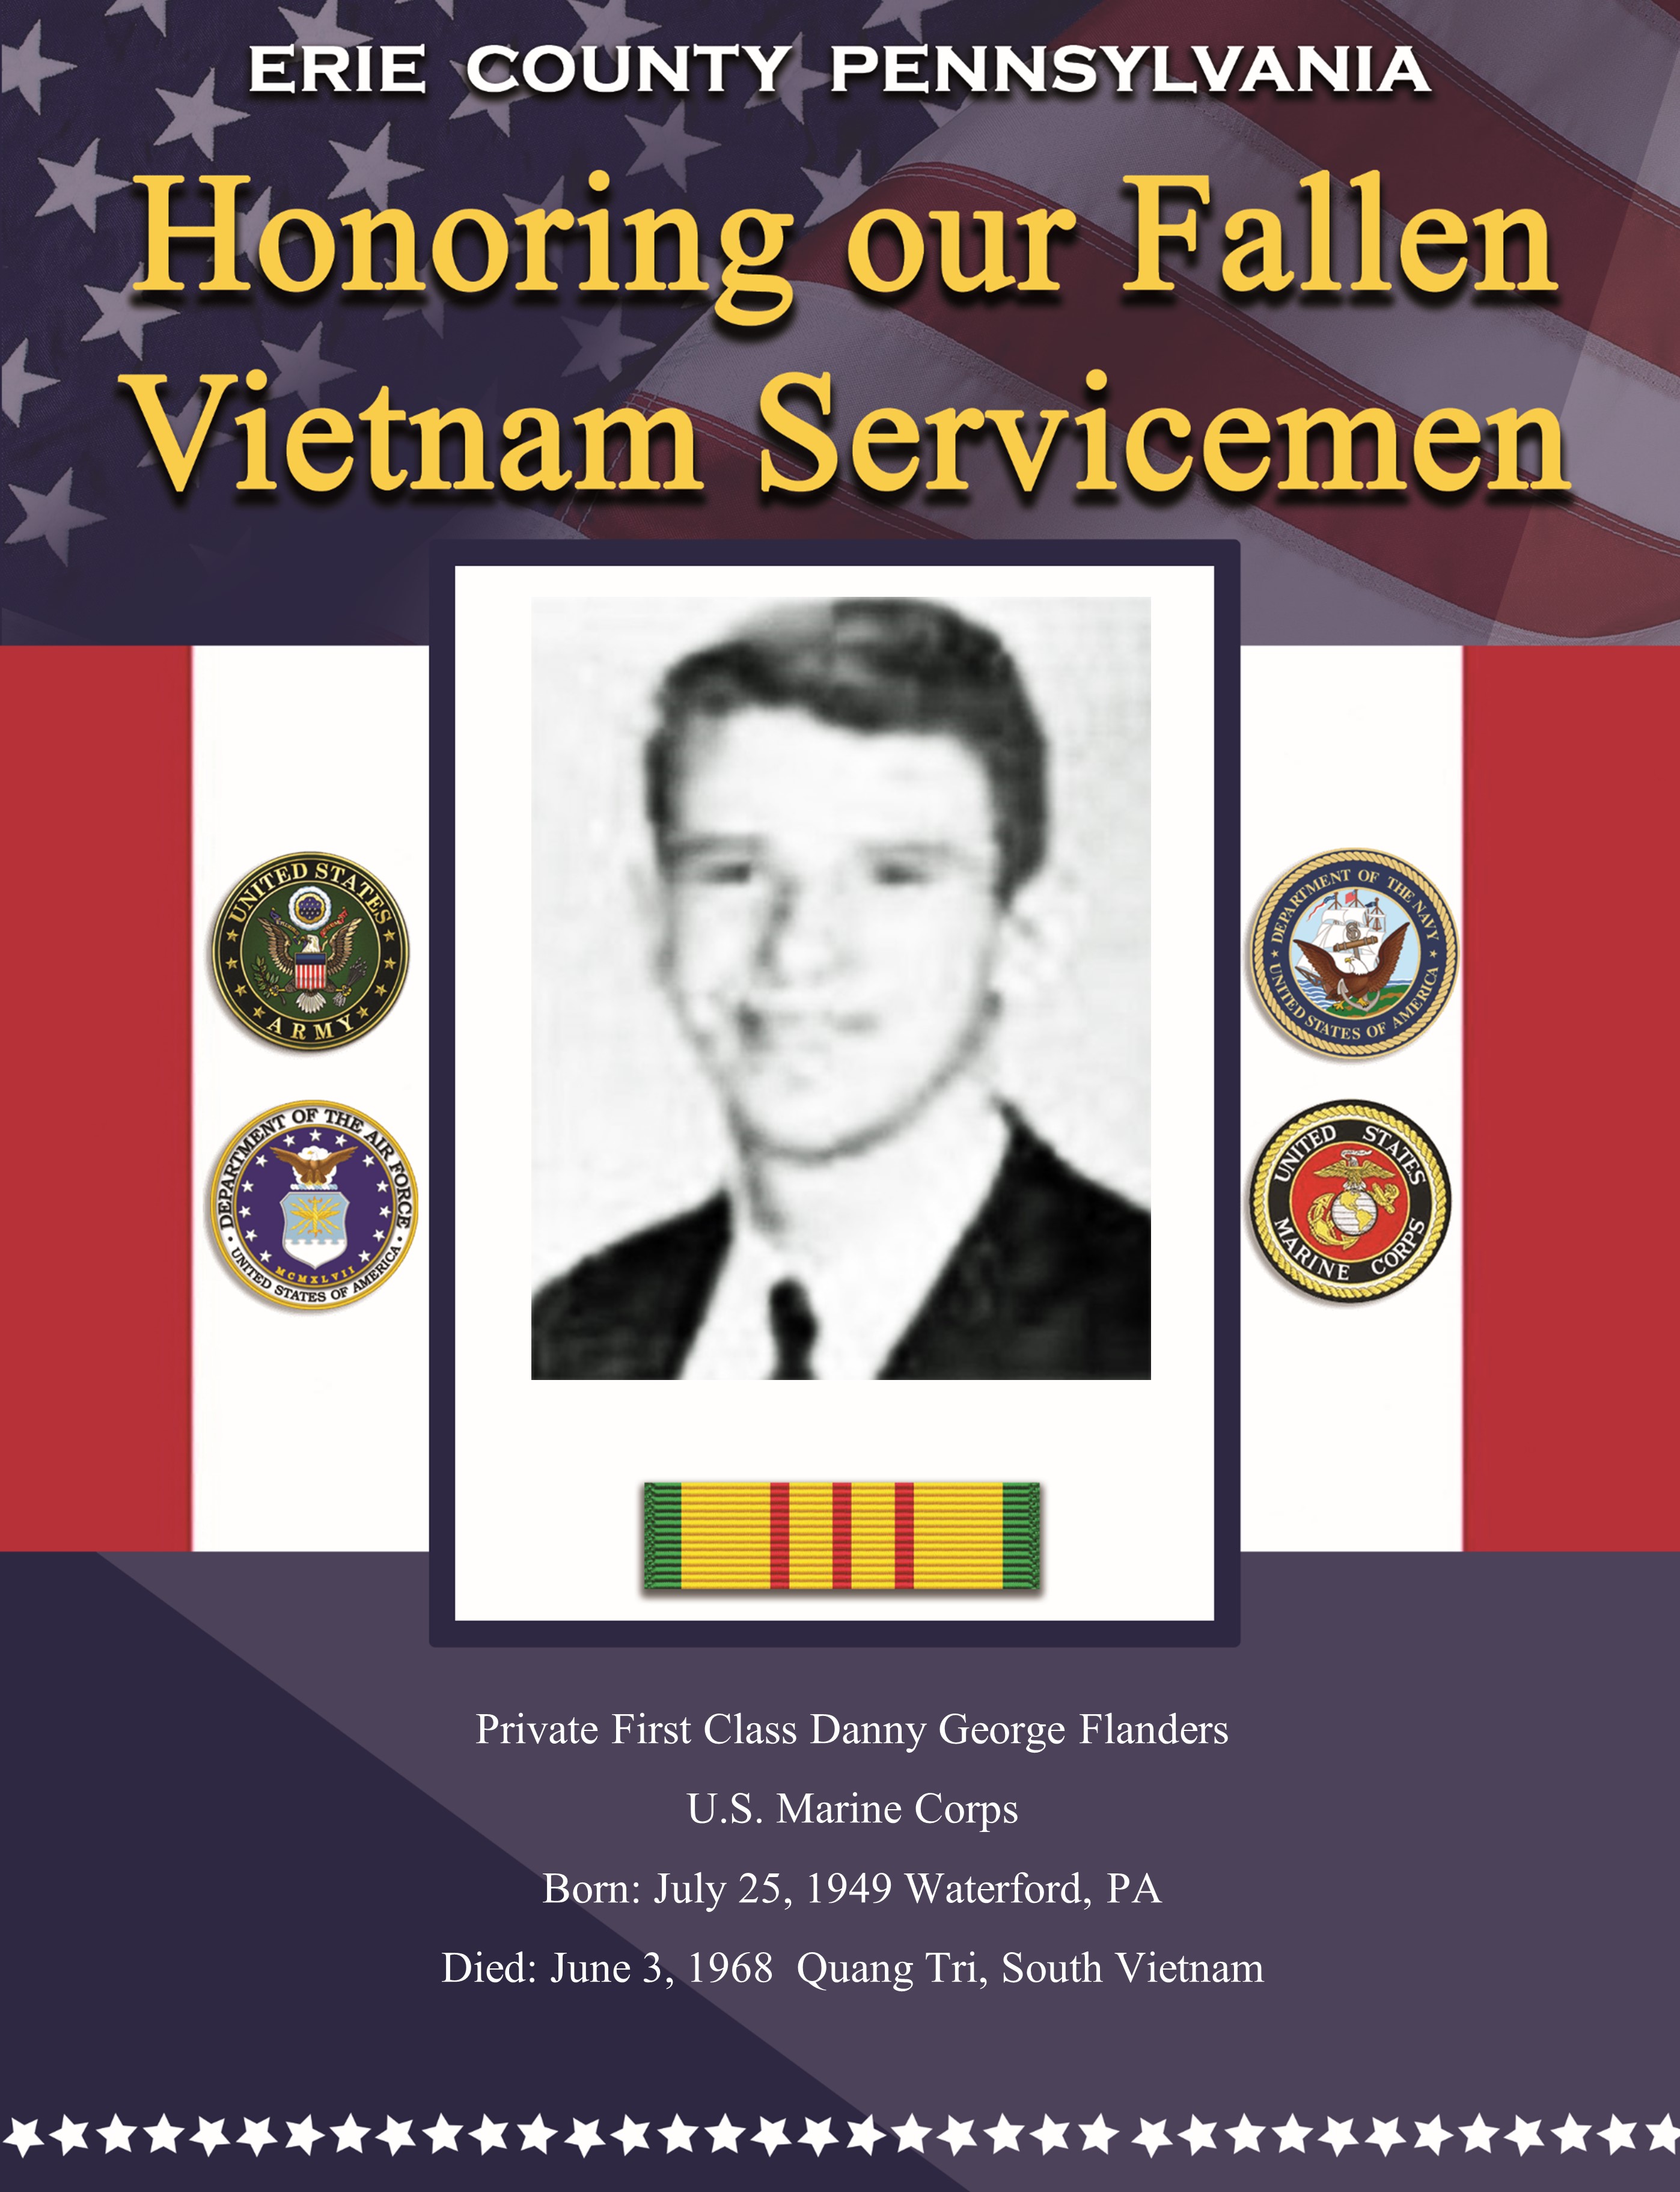 Fallen in Vietnam 33